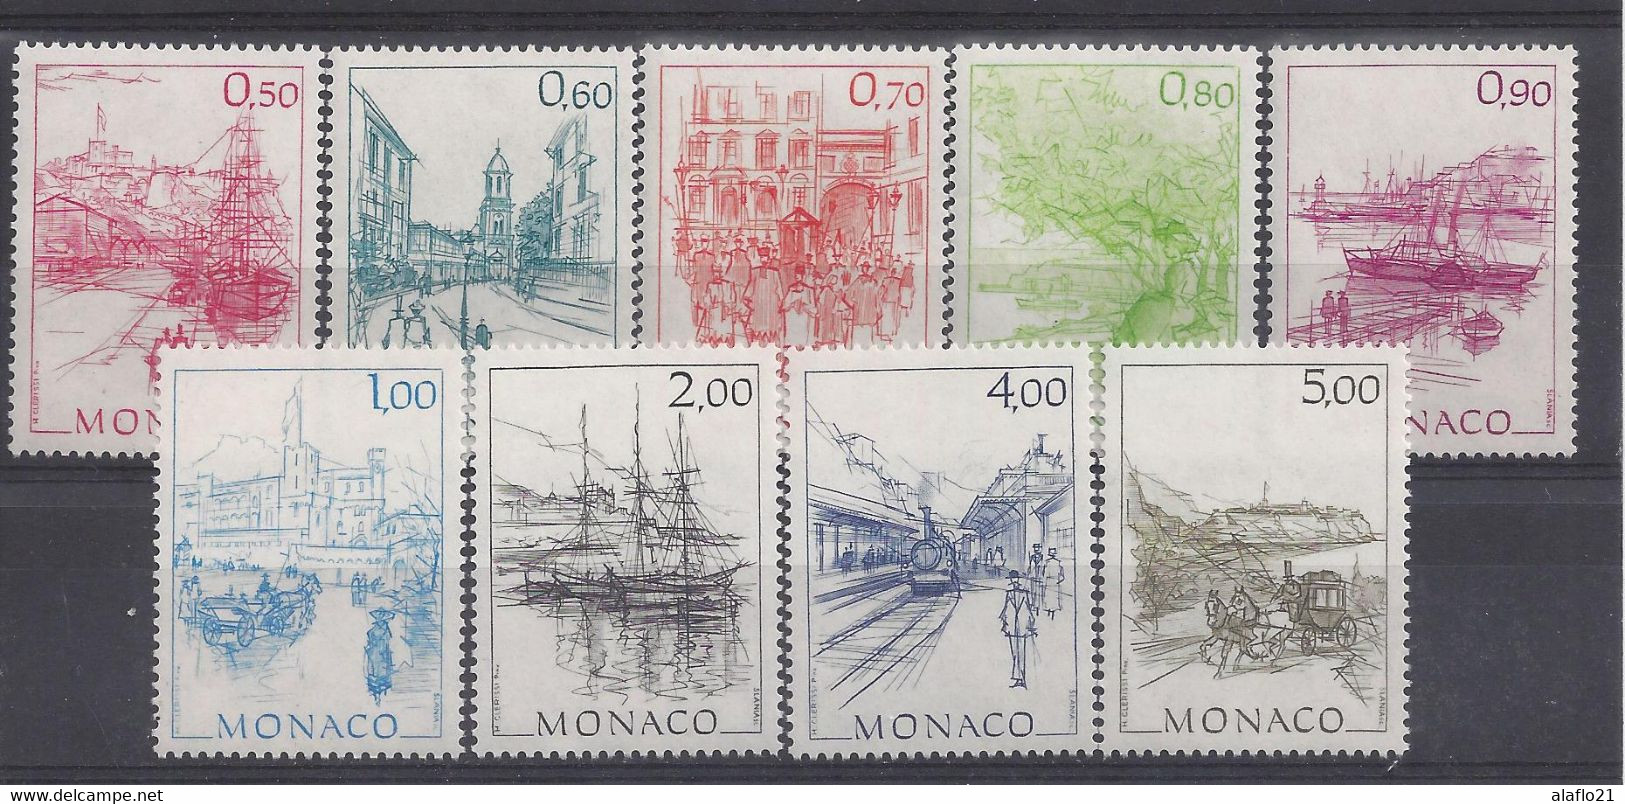 MONACO - Yvert N° 1510 à 1518 - MONACO AUTREFOIS - NEUFS SANS CHARNIERE - Nuovi